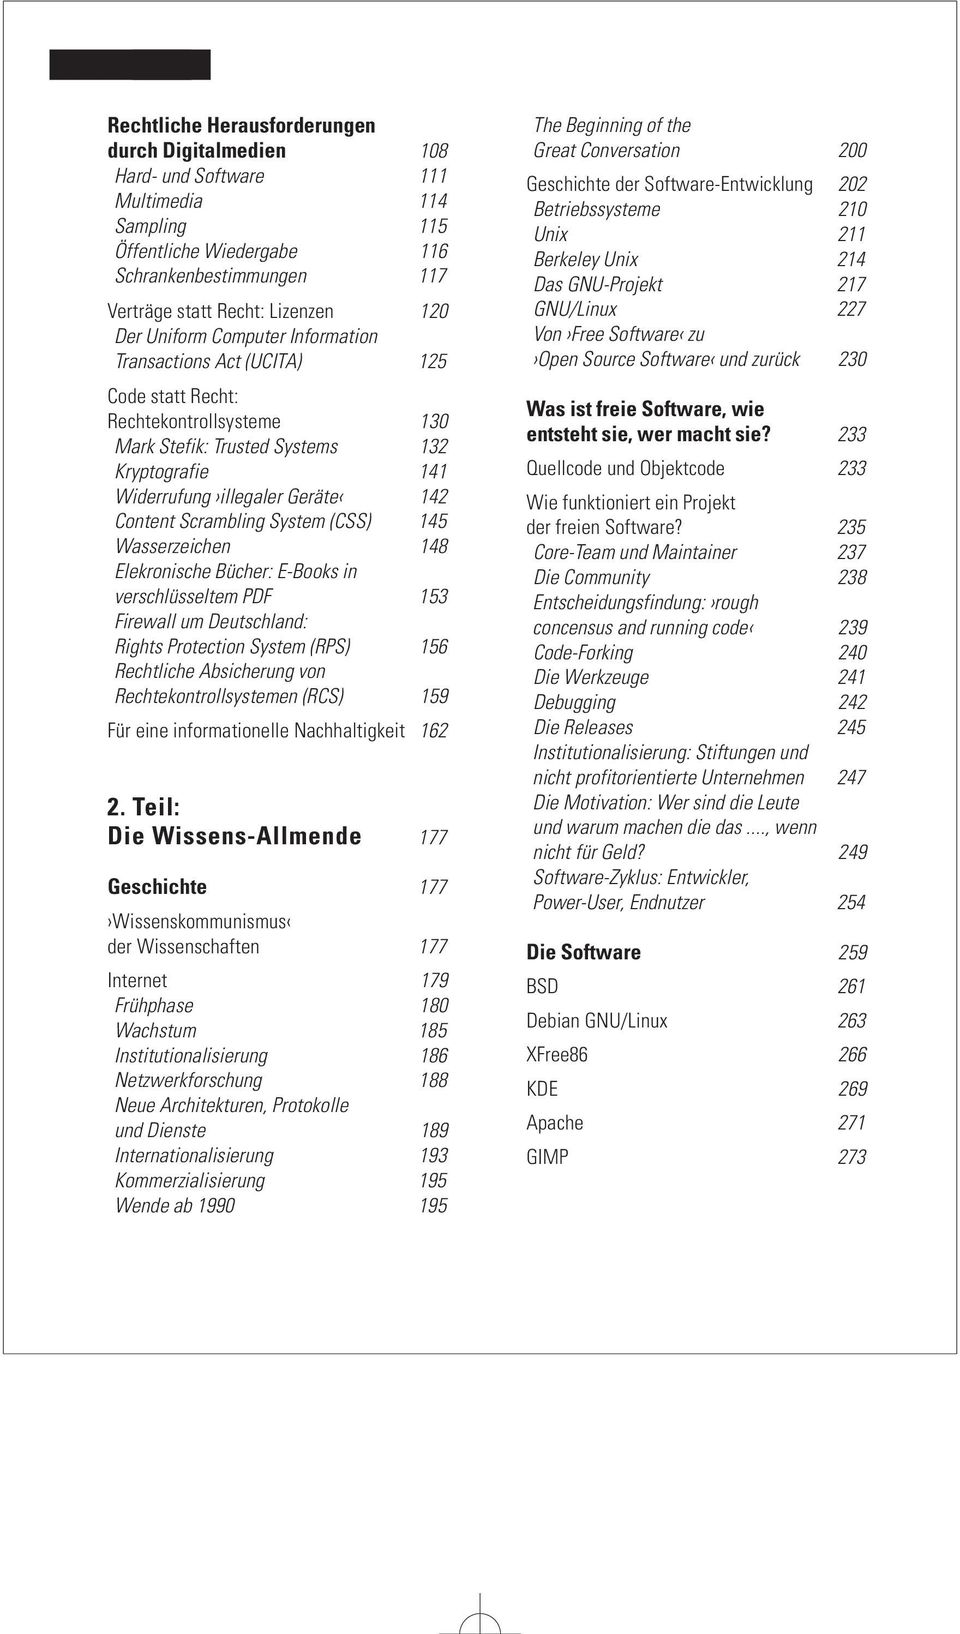 Scrambling System (CSS) 145 Wasserzeichen 148 Elekronische Bücher: E-Books in verschlüsseltem PDF 153 Firewall um Deutschland: Rights Protection System (RPS) 156 Rechtliche Absicherung von